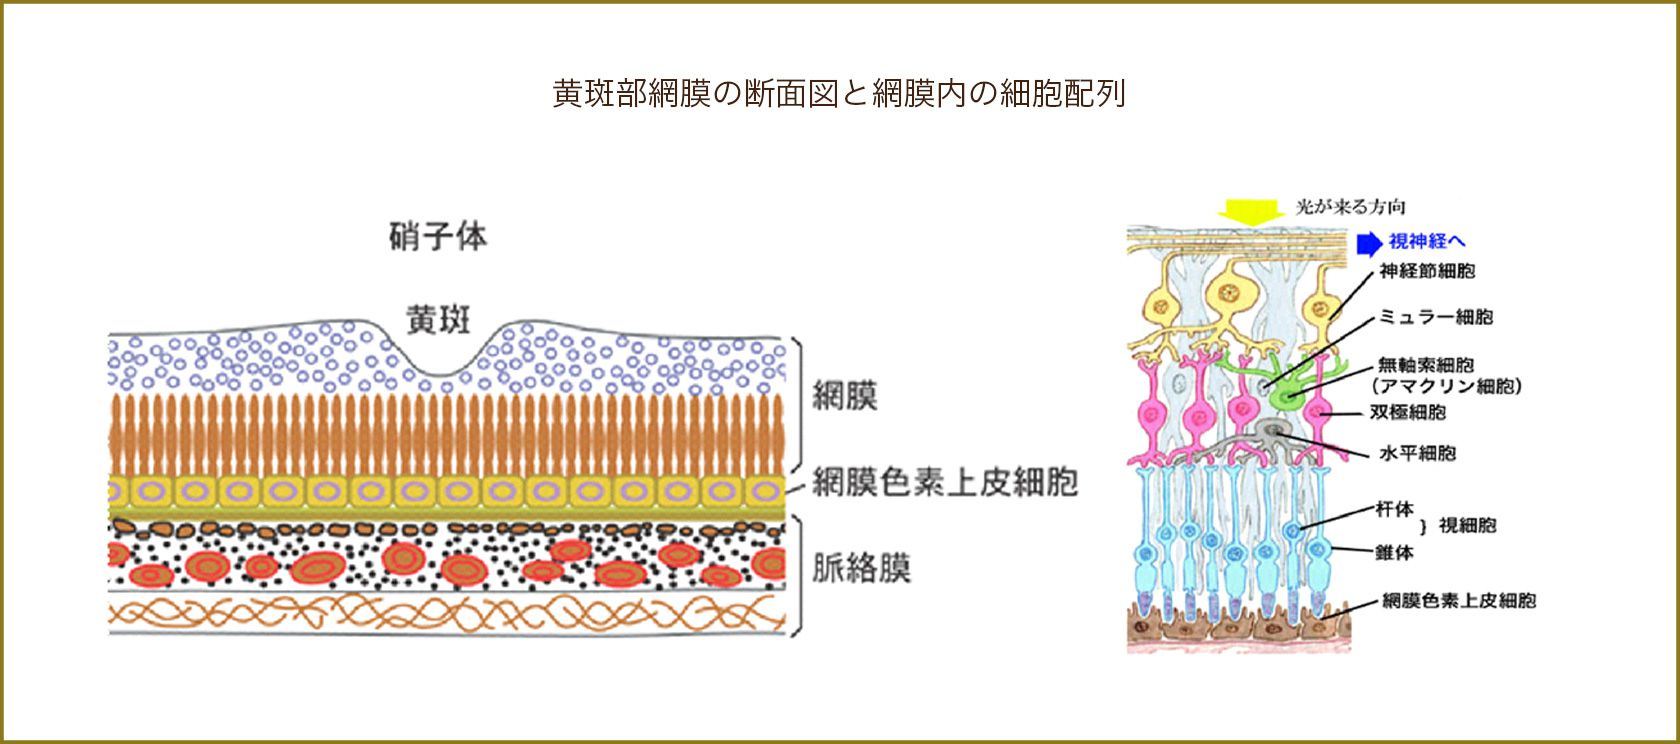 黄斑部網膜の断面図と網膜内の細胞配列